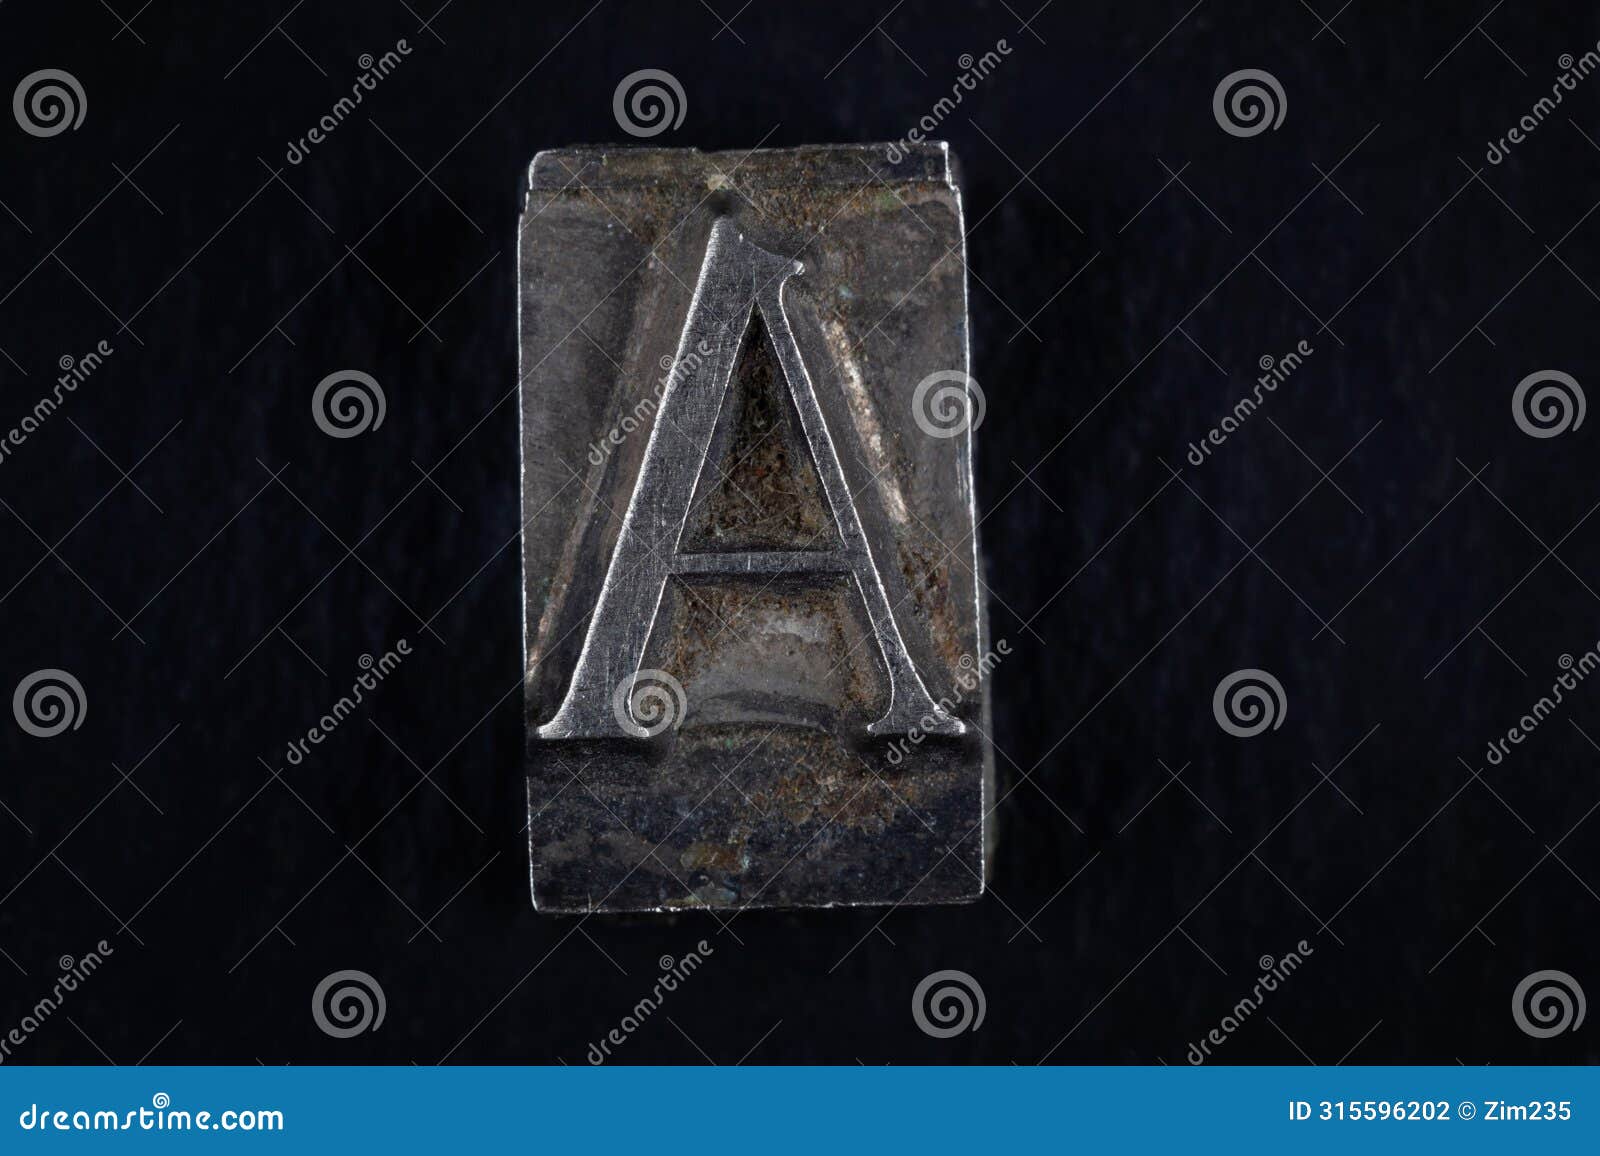 antique vintage movable type alphabet letter a